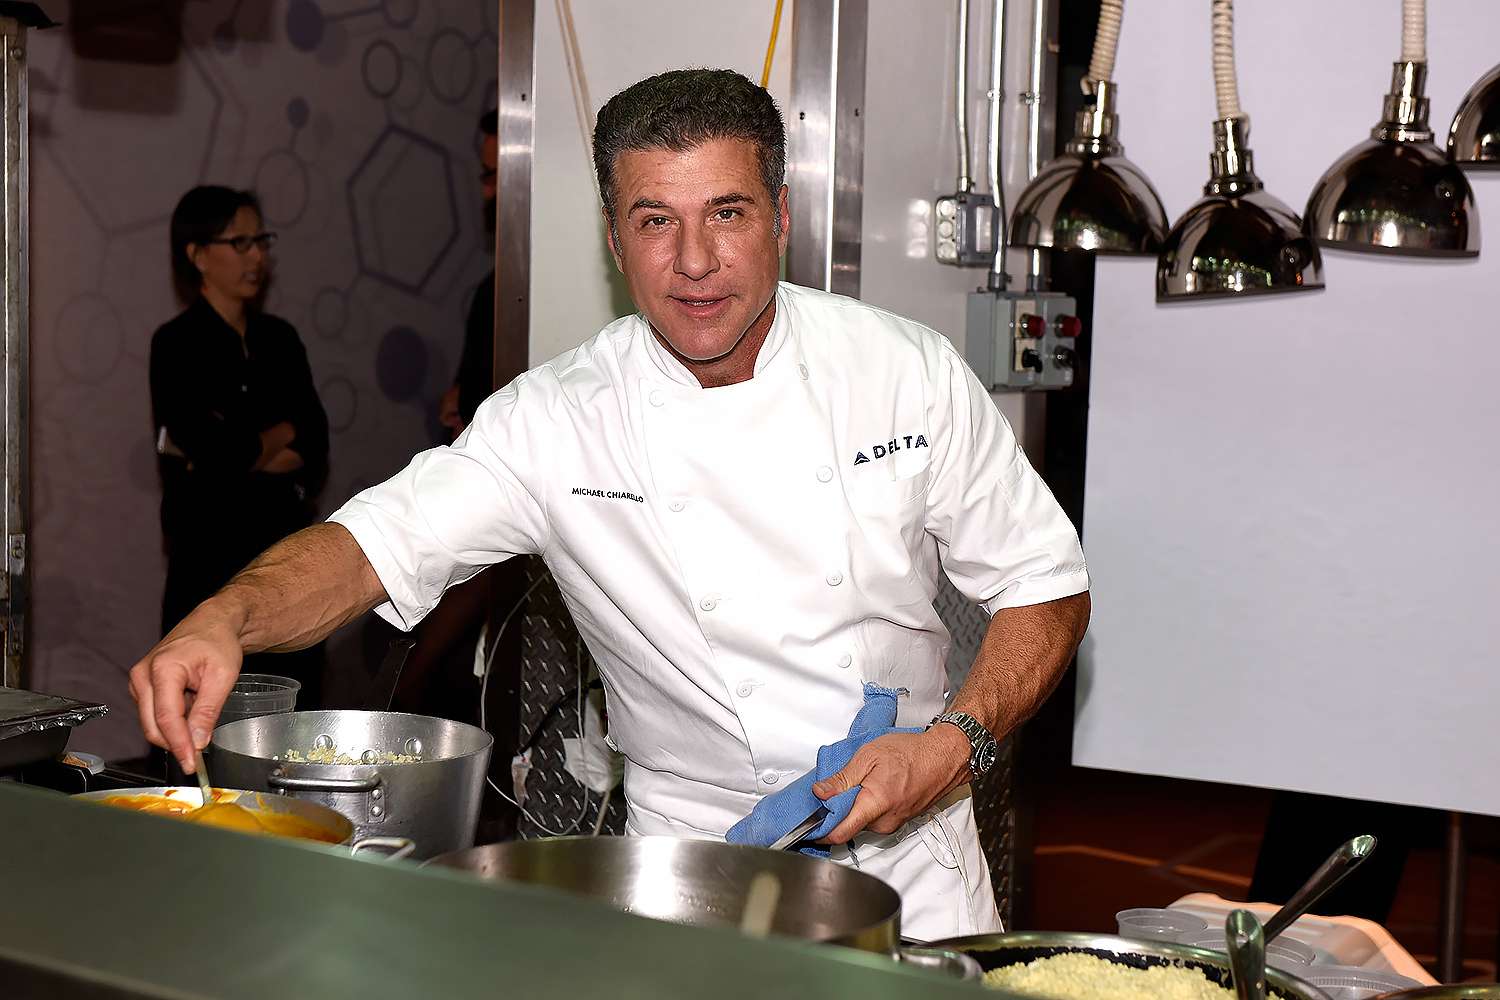 Michael Chiarello dead: Celebrity chef and Food Network star was 61